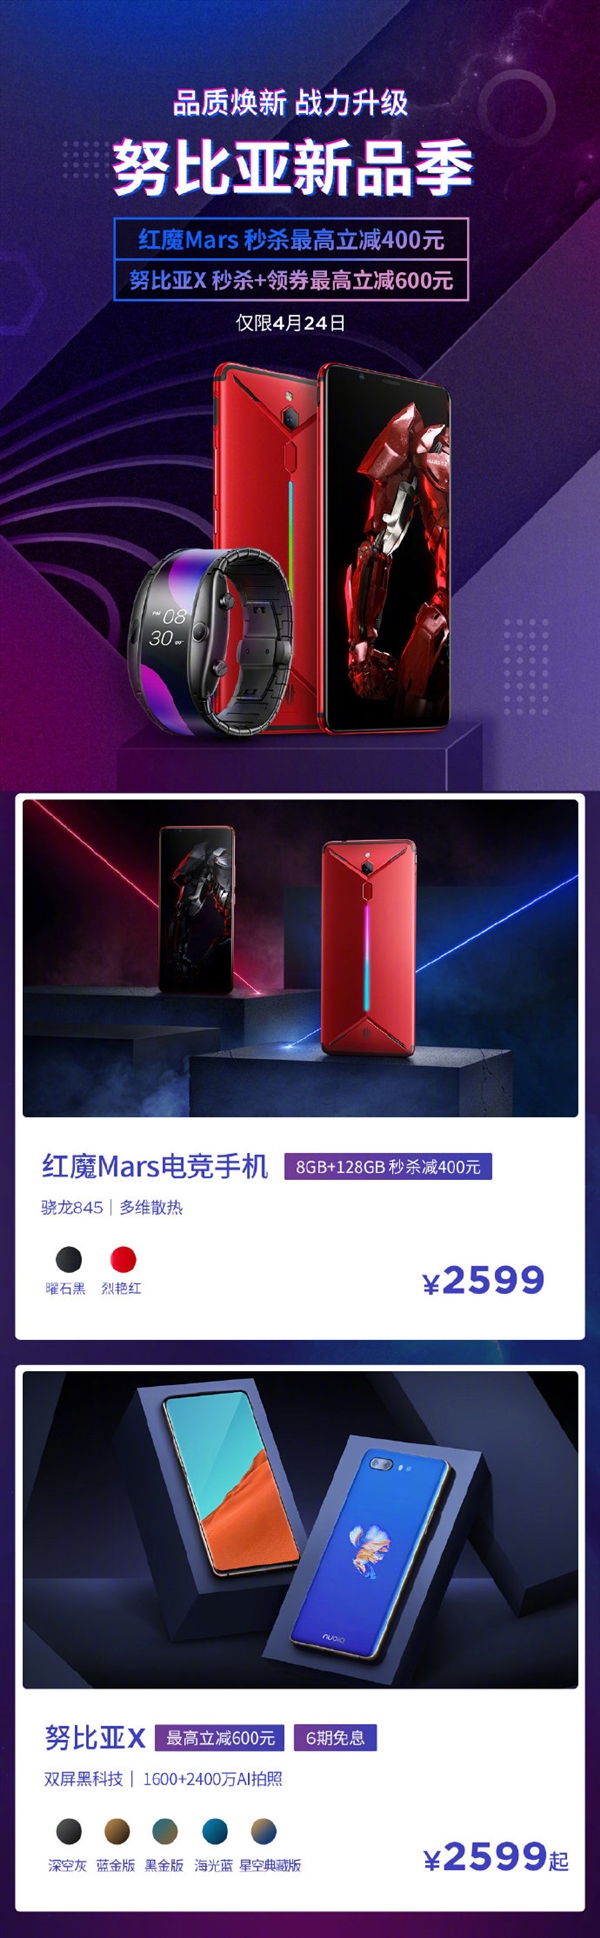 骁龙845+8G内存 努比亚红魔Mars电竞手机再次降价